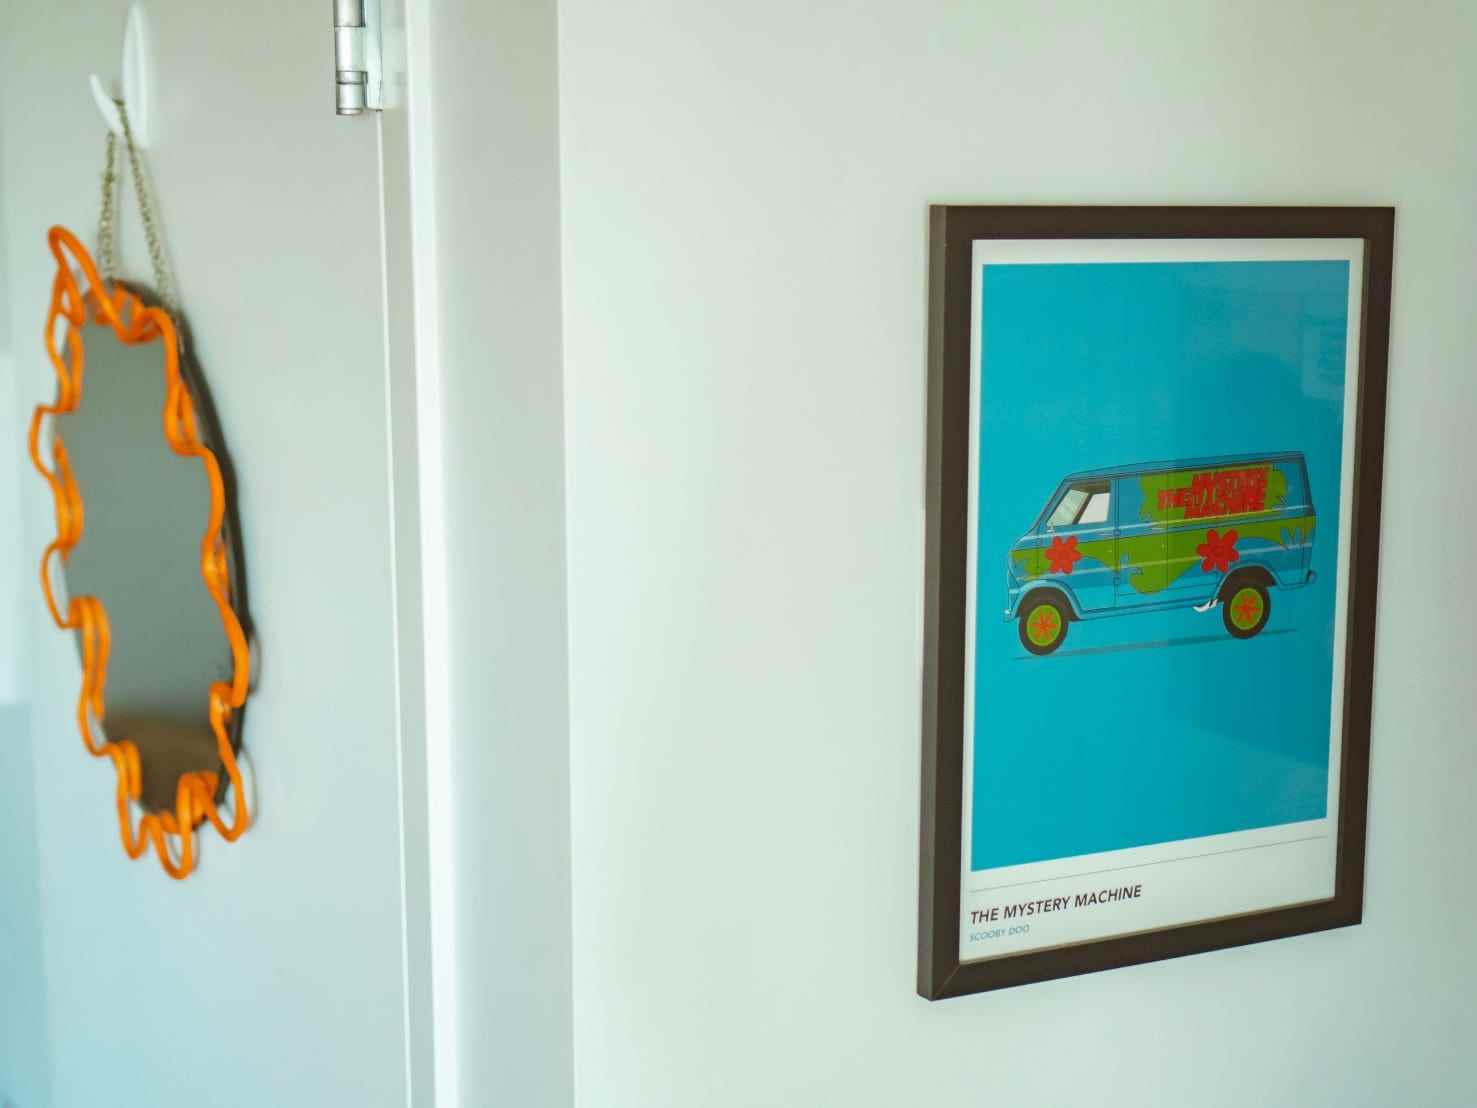 An den Wänden hängen ein Spiegel mit einem orangefarbenen Kringel-Rahmen und ein Druck der mysteriösen Maschine aus „Scooby-Doo“.